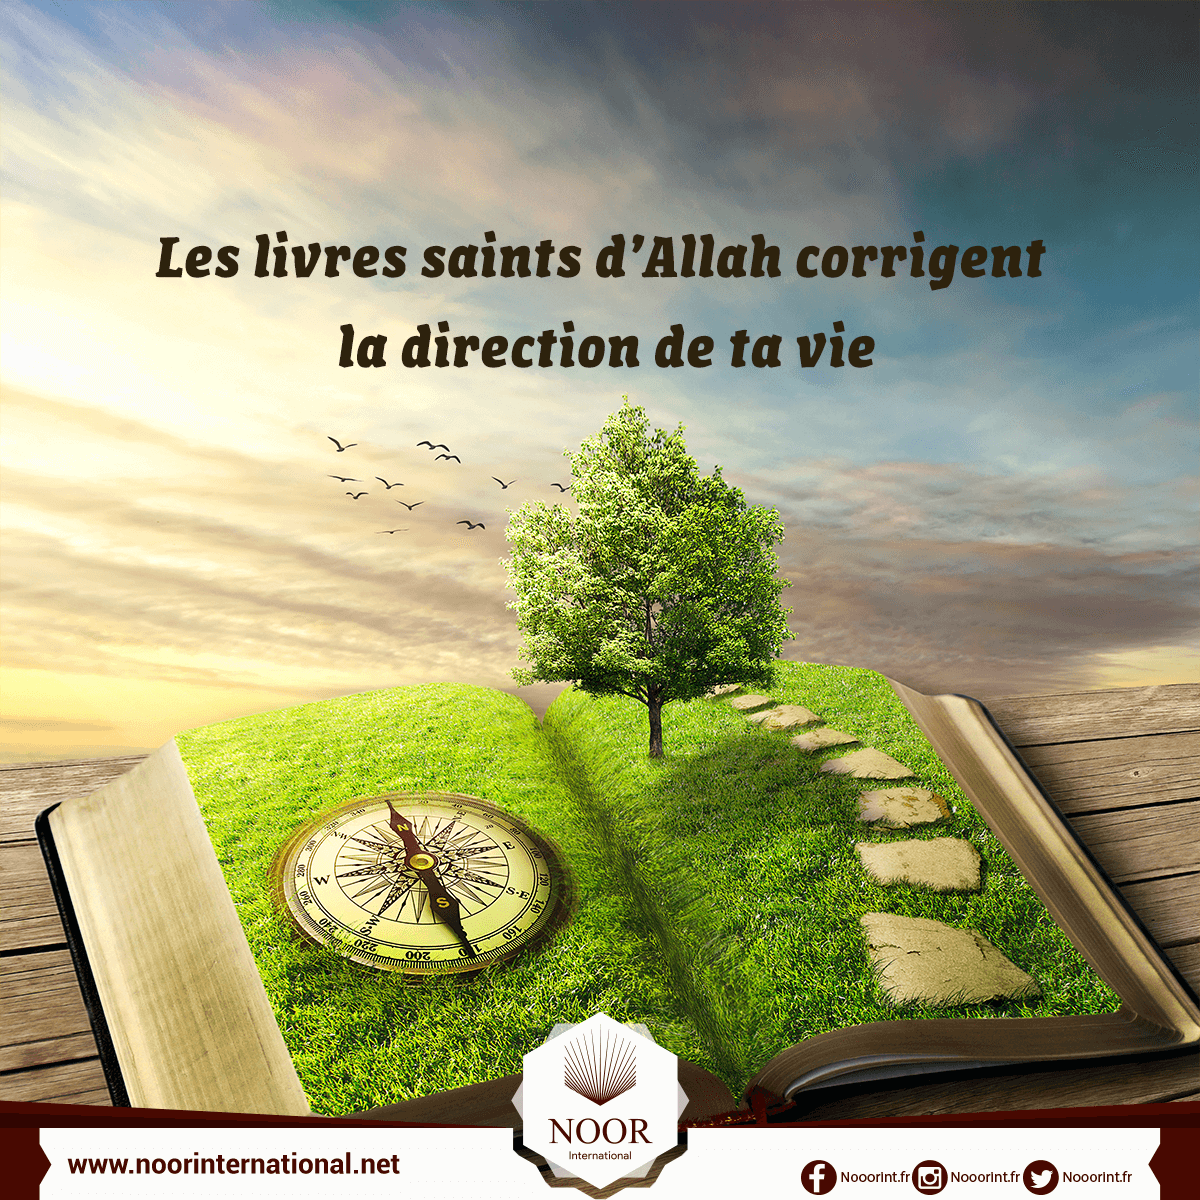 Les livres saints d’Allah corrigent la direction de ta vie